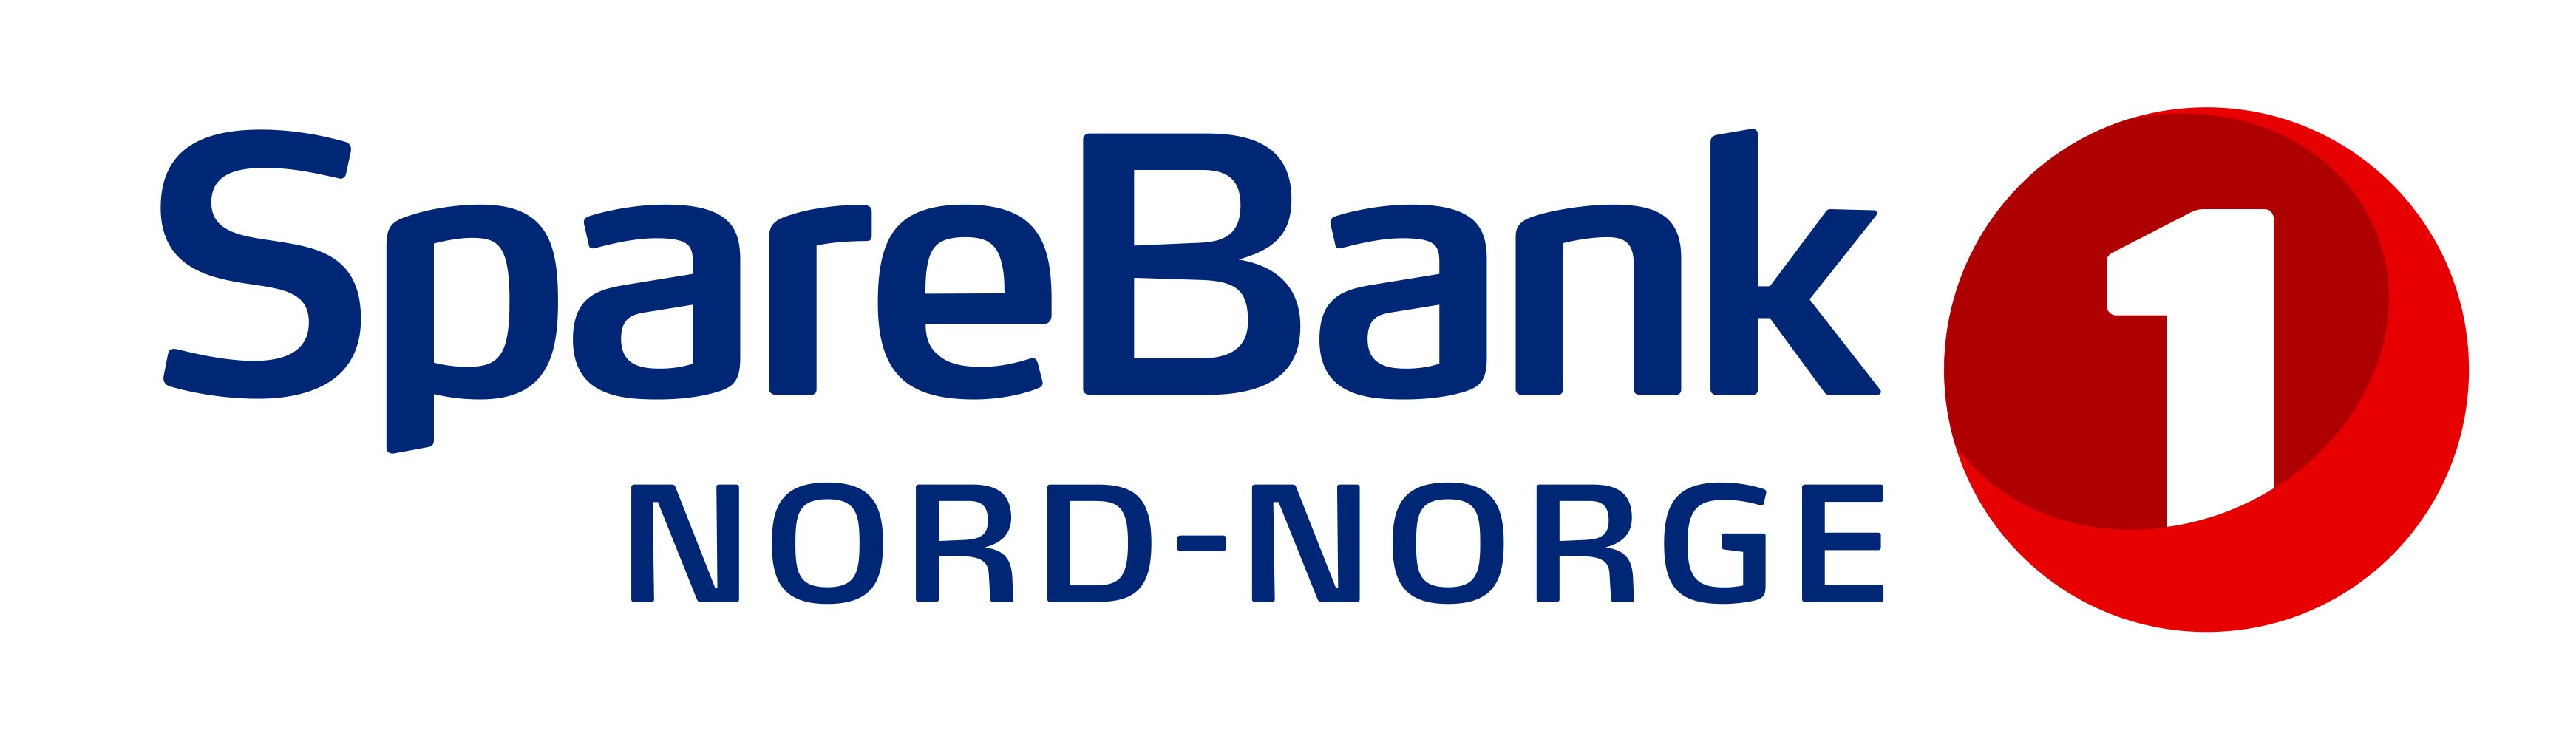 SpareBank 1 Nord-Norge logo